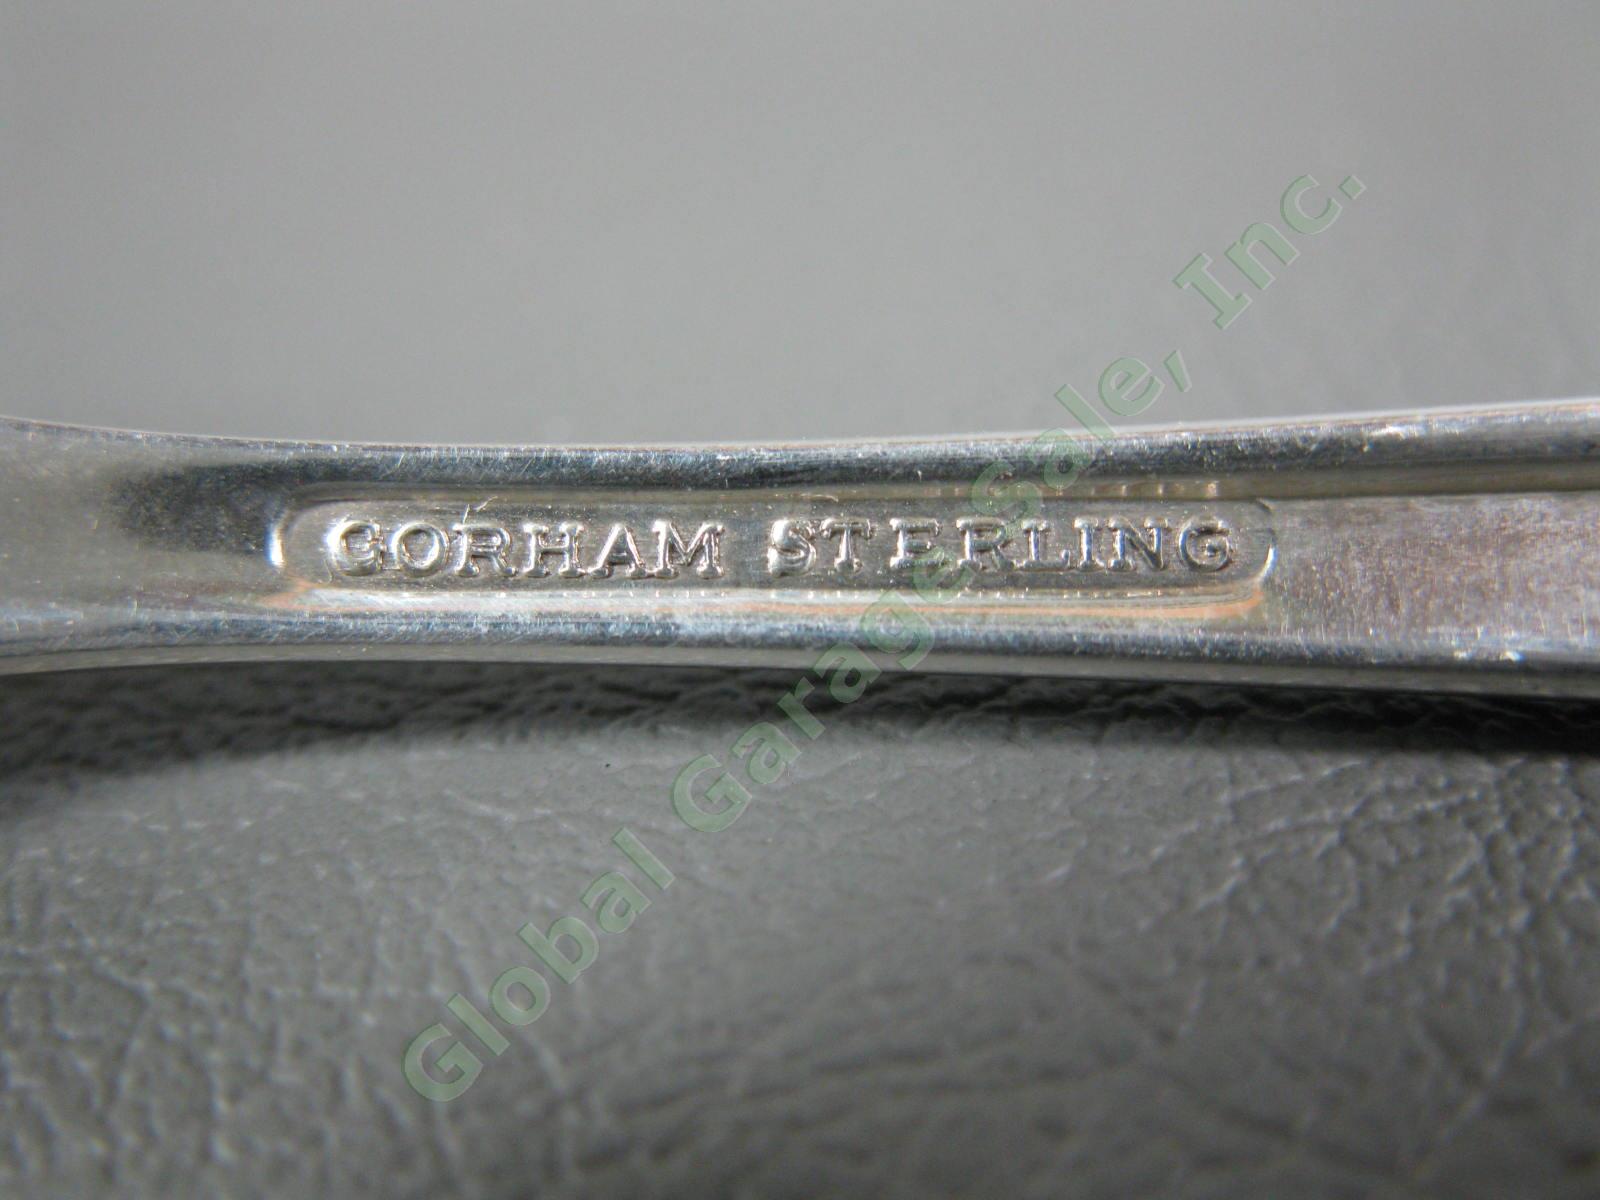 12 Gorham Firelight Sterling Silver 6 3/4" Salad Fork Set 507 Grams 925 18oz NR 3